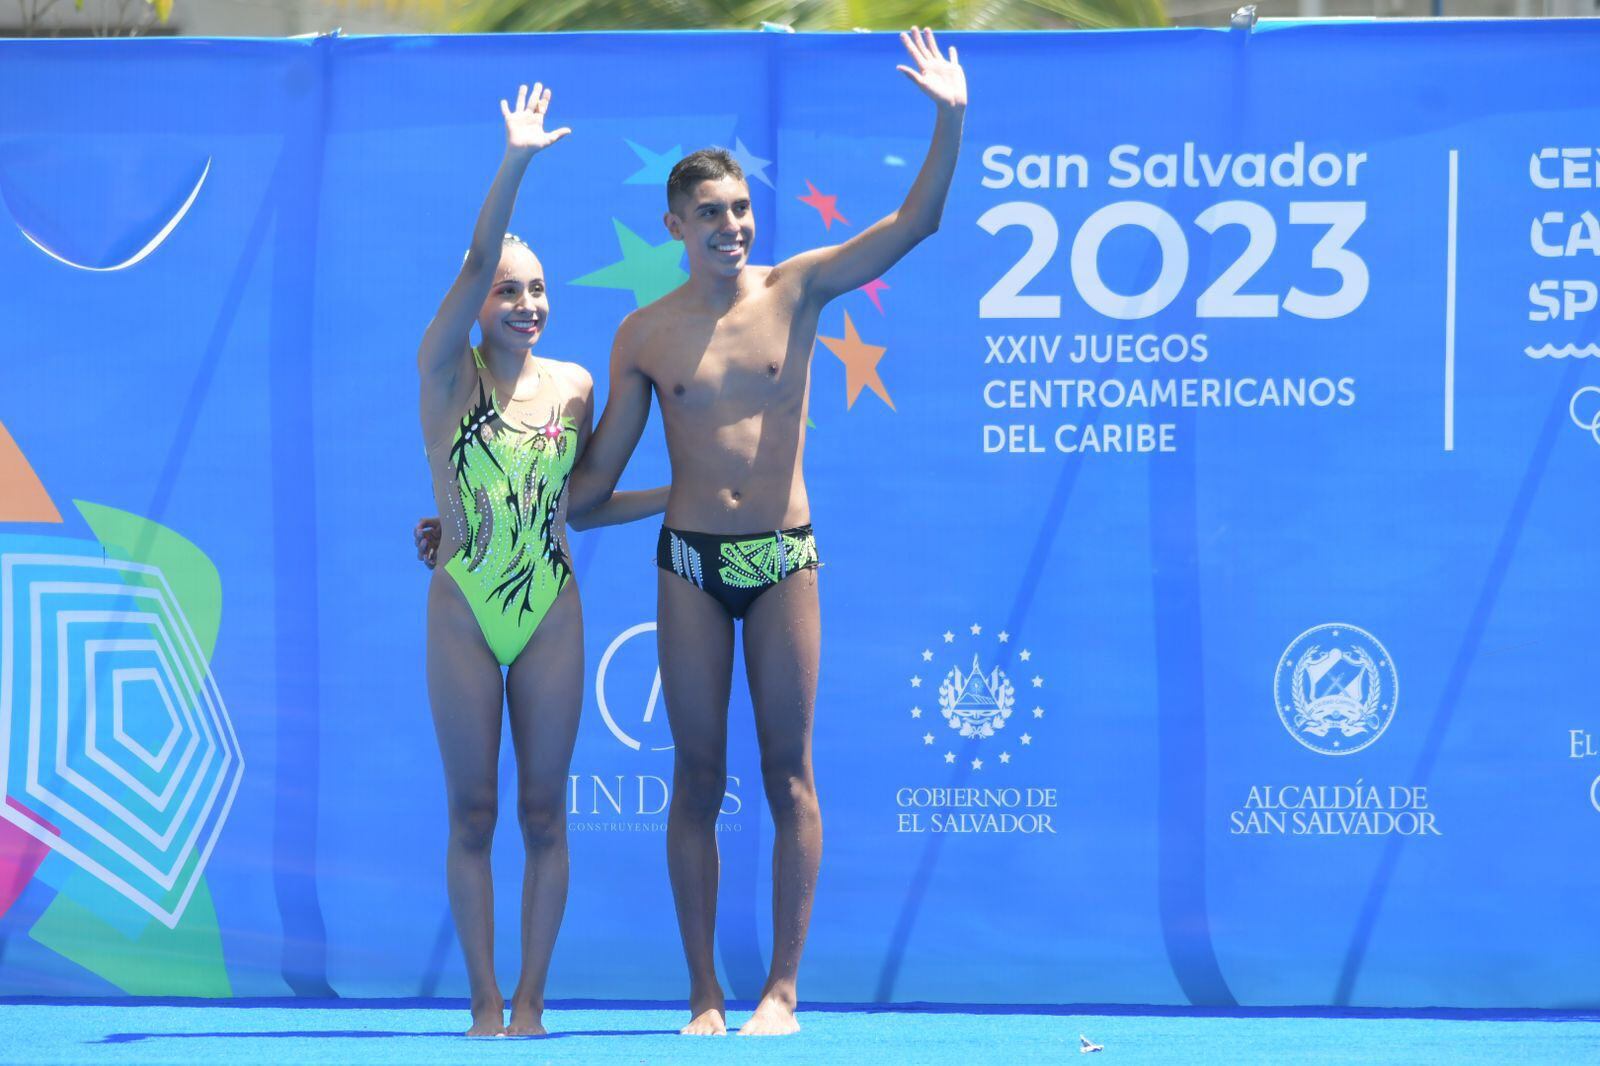 Centroamericanos 2023: México gana medalla de plata Dueto Técnico Mixto de Natación Artística